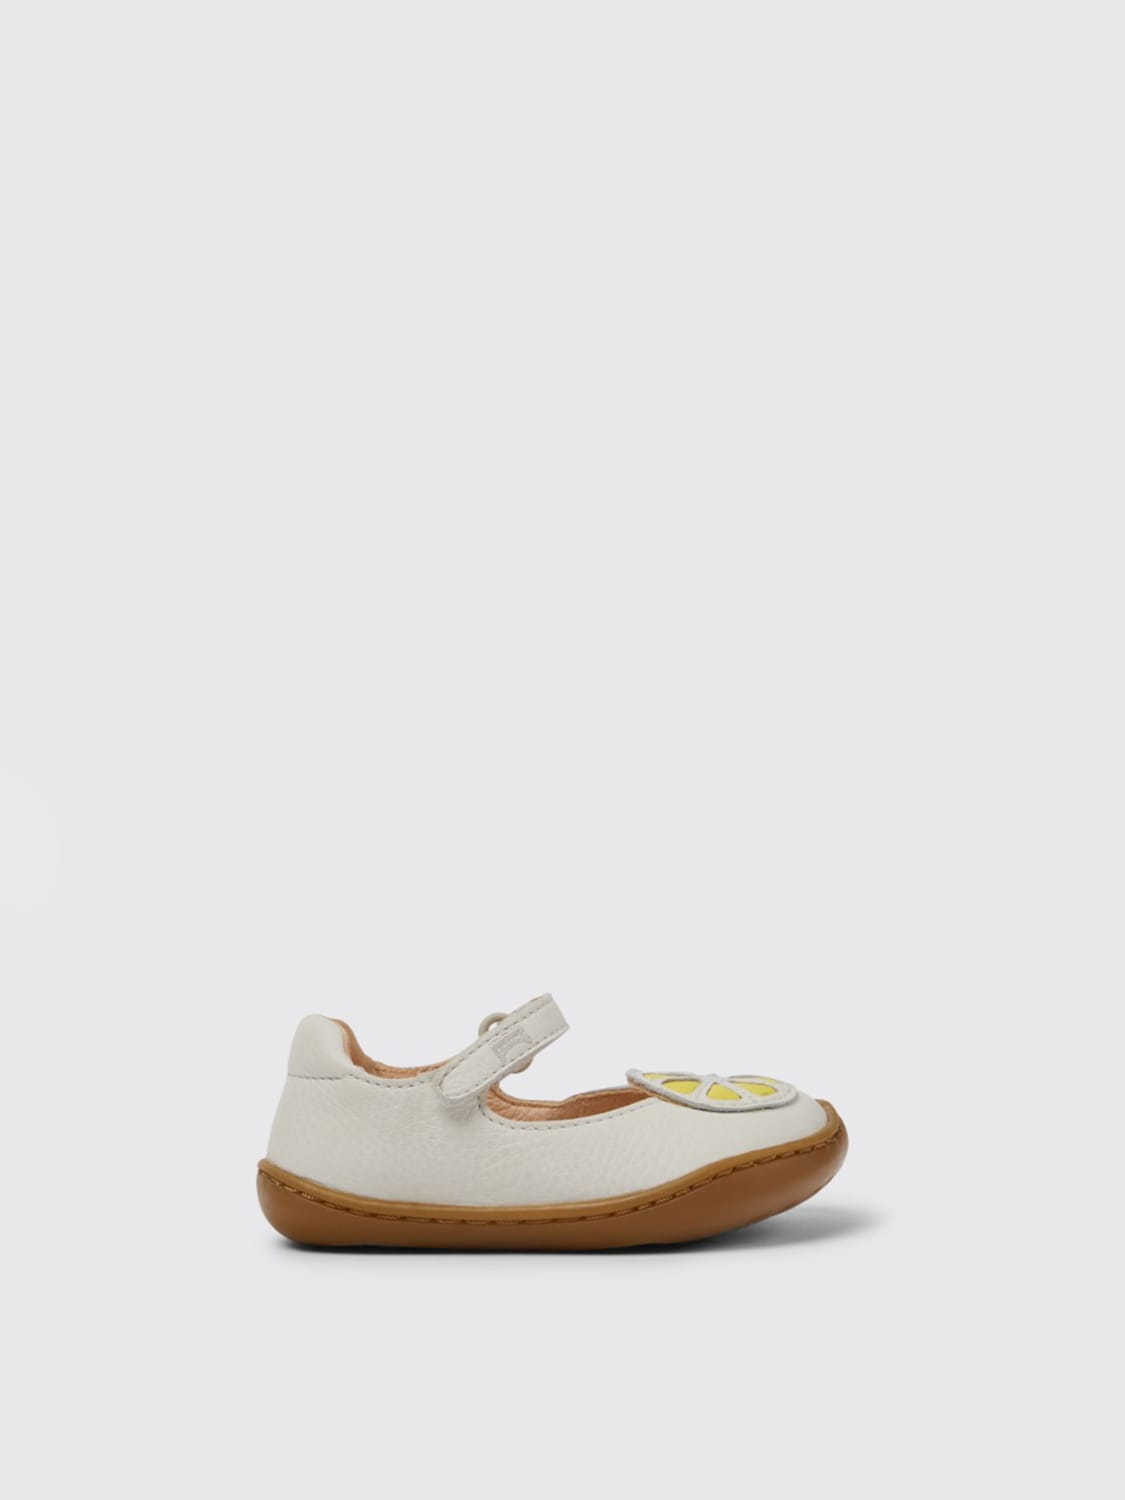 Outlet de Camper: Zapato en piel limones, Blanco | Zapatos Camper TWINS en línea en GIGLIO.COM